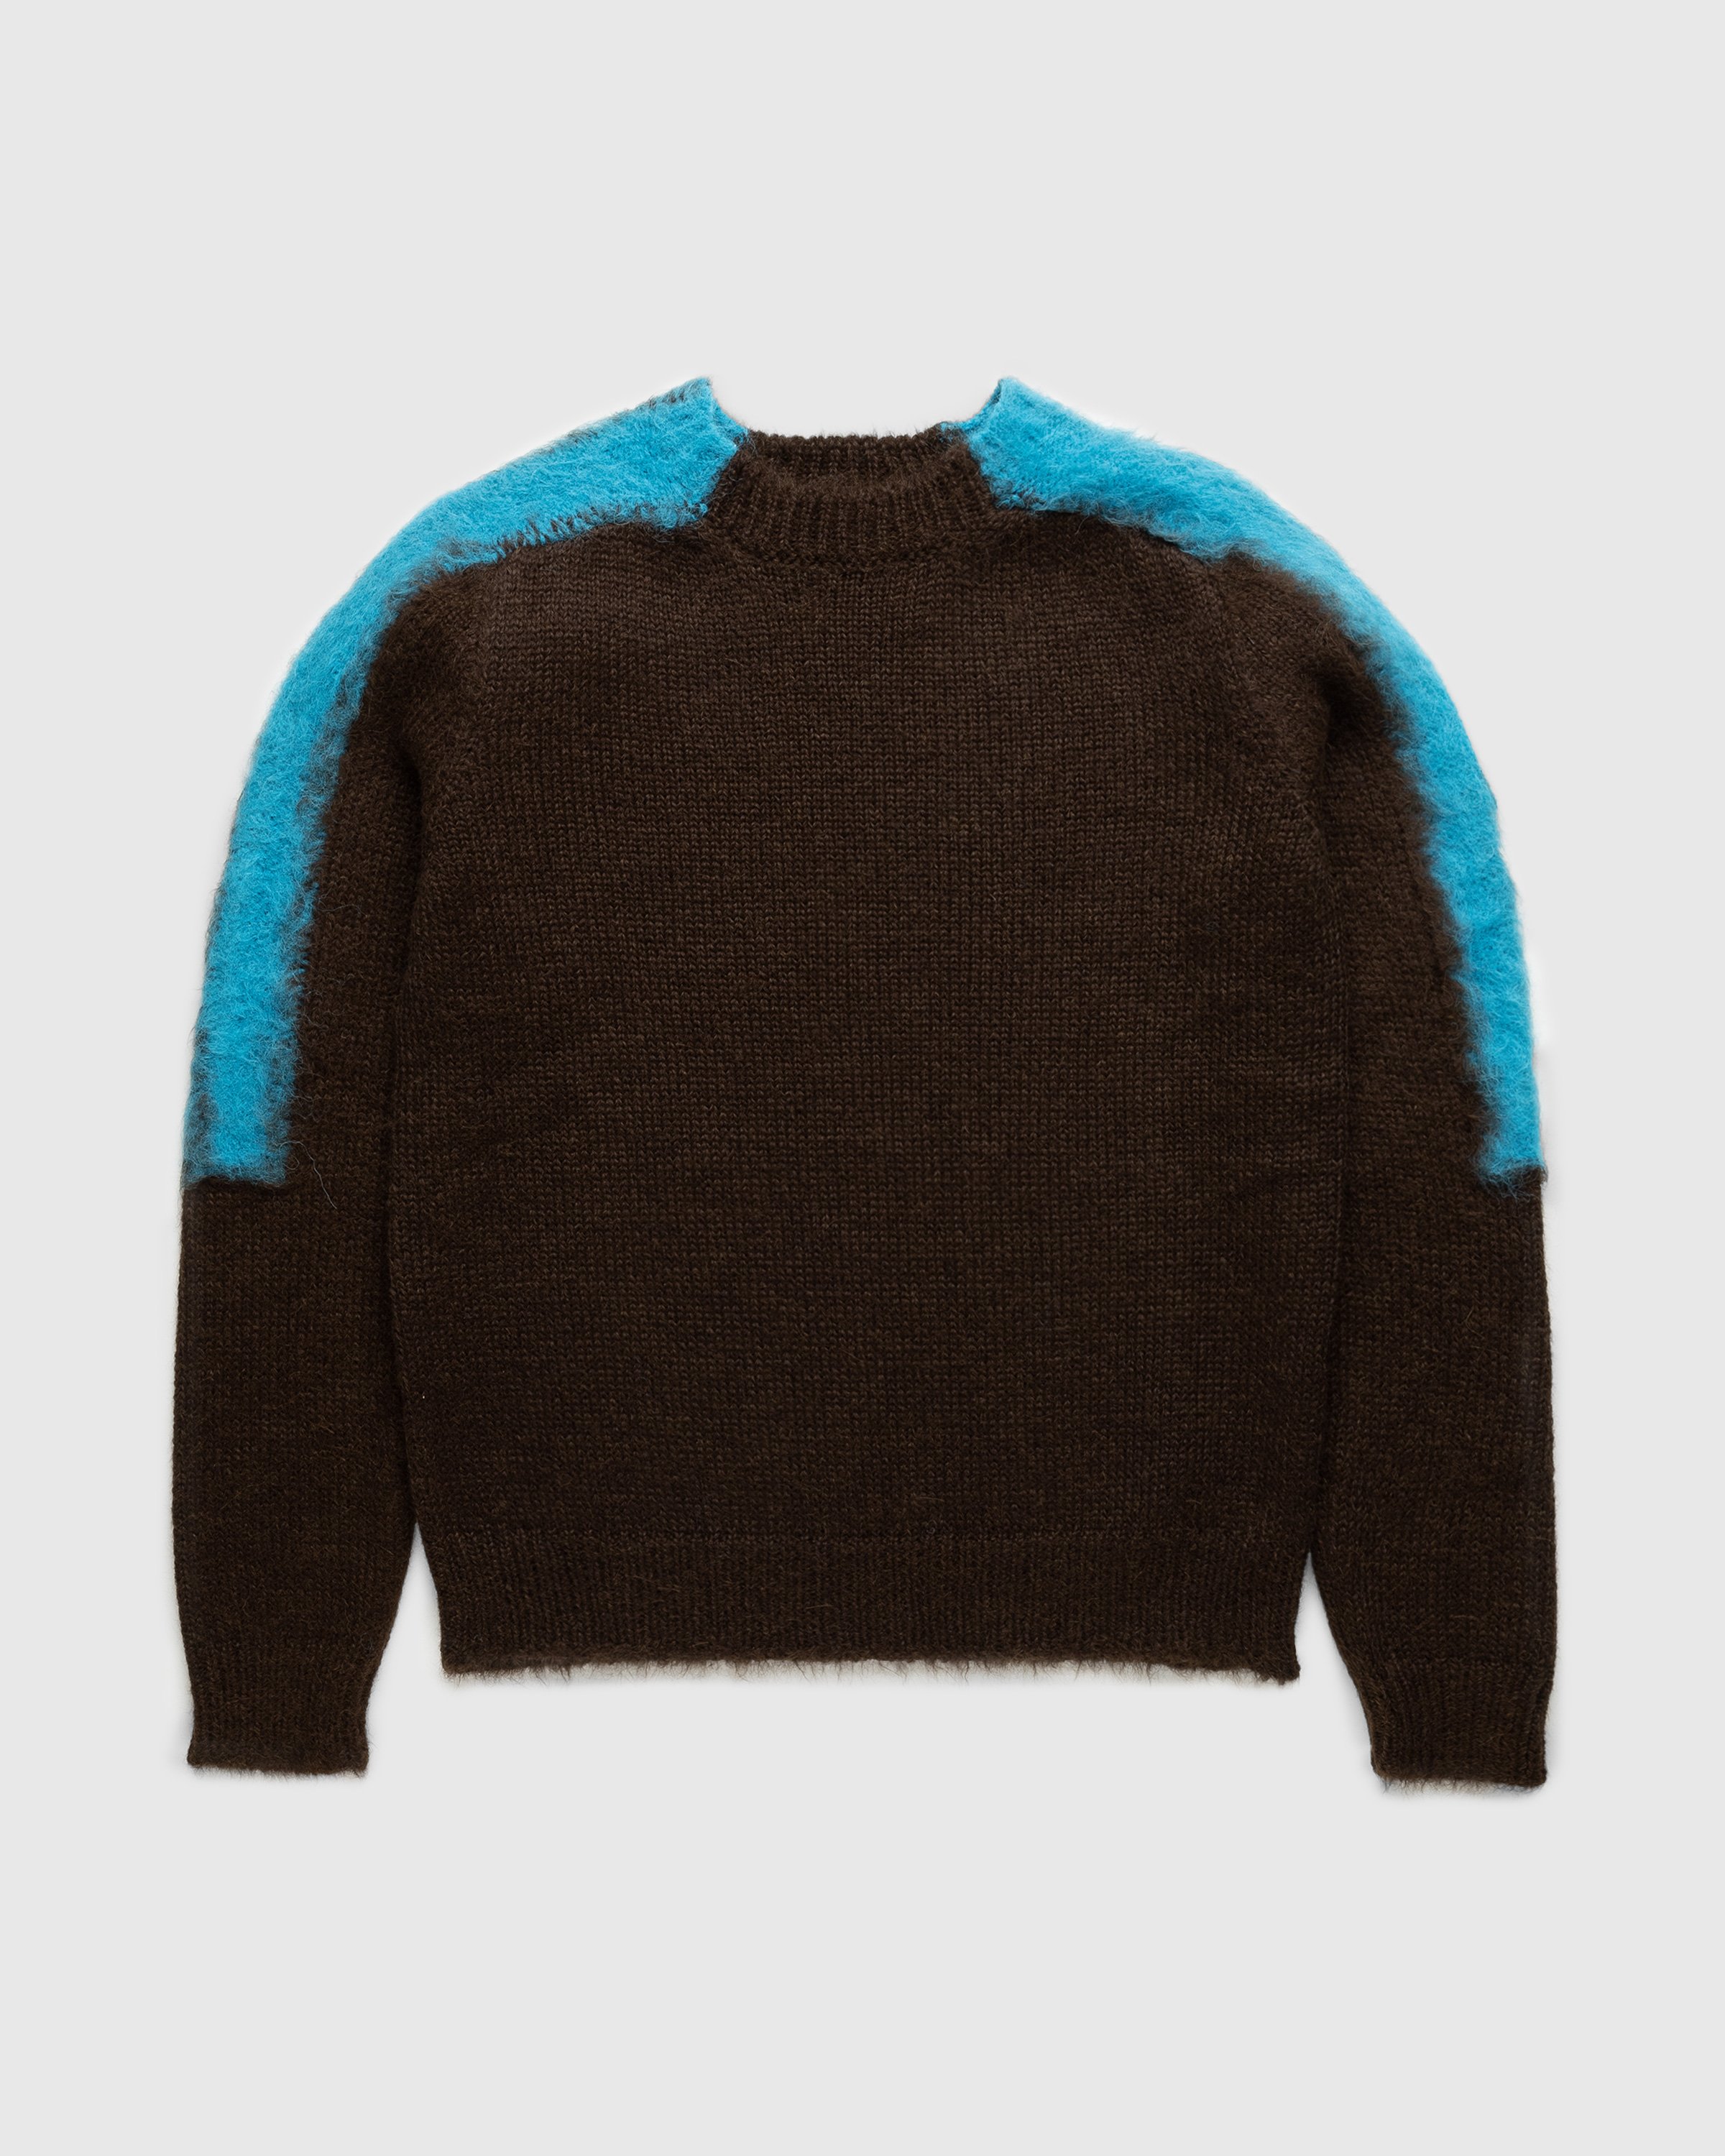 Jil Sander - Striped Alpaca Wool Sweater Brown/Blue - Clothing - Brown - Image 1